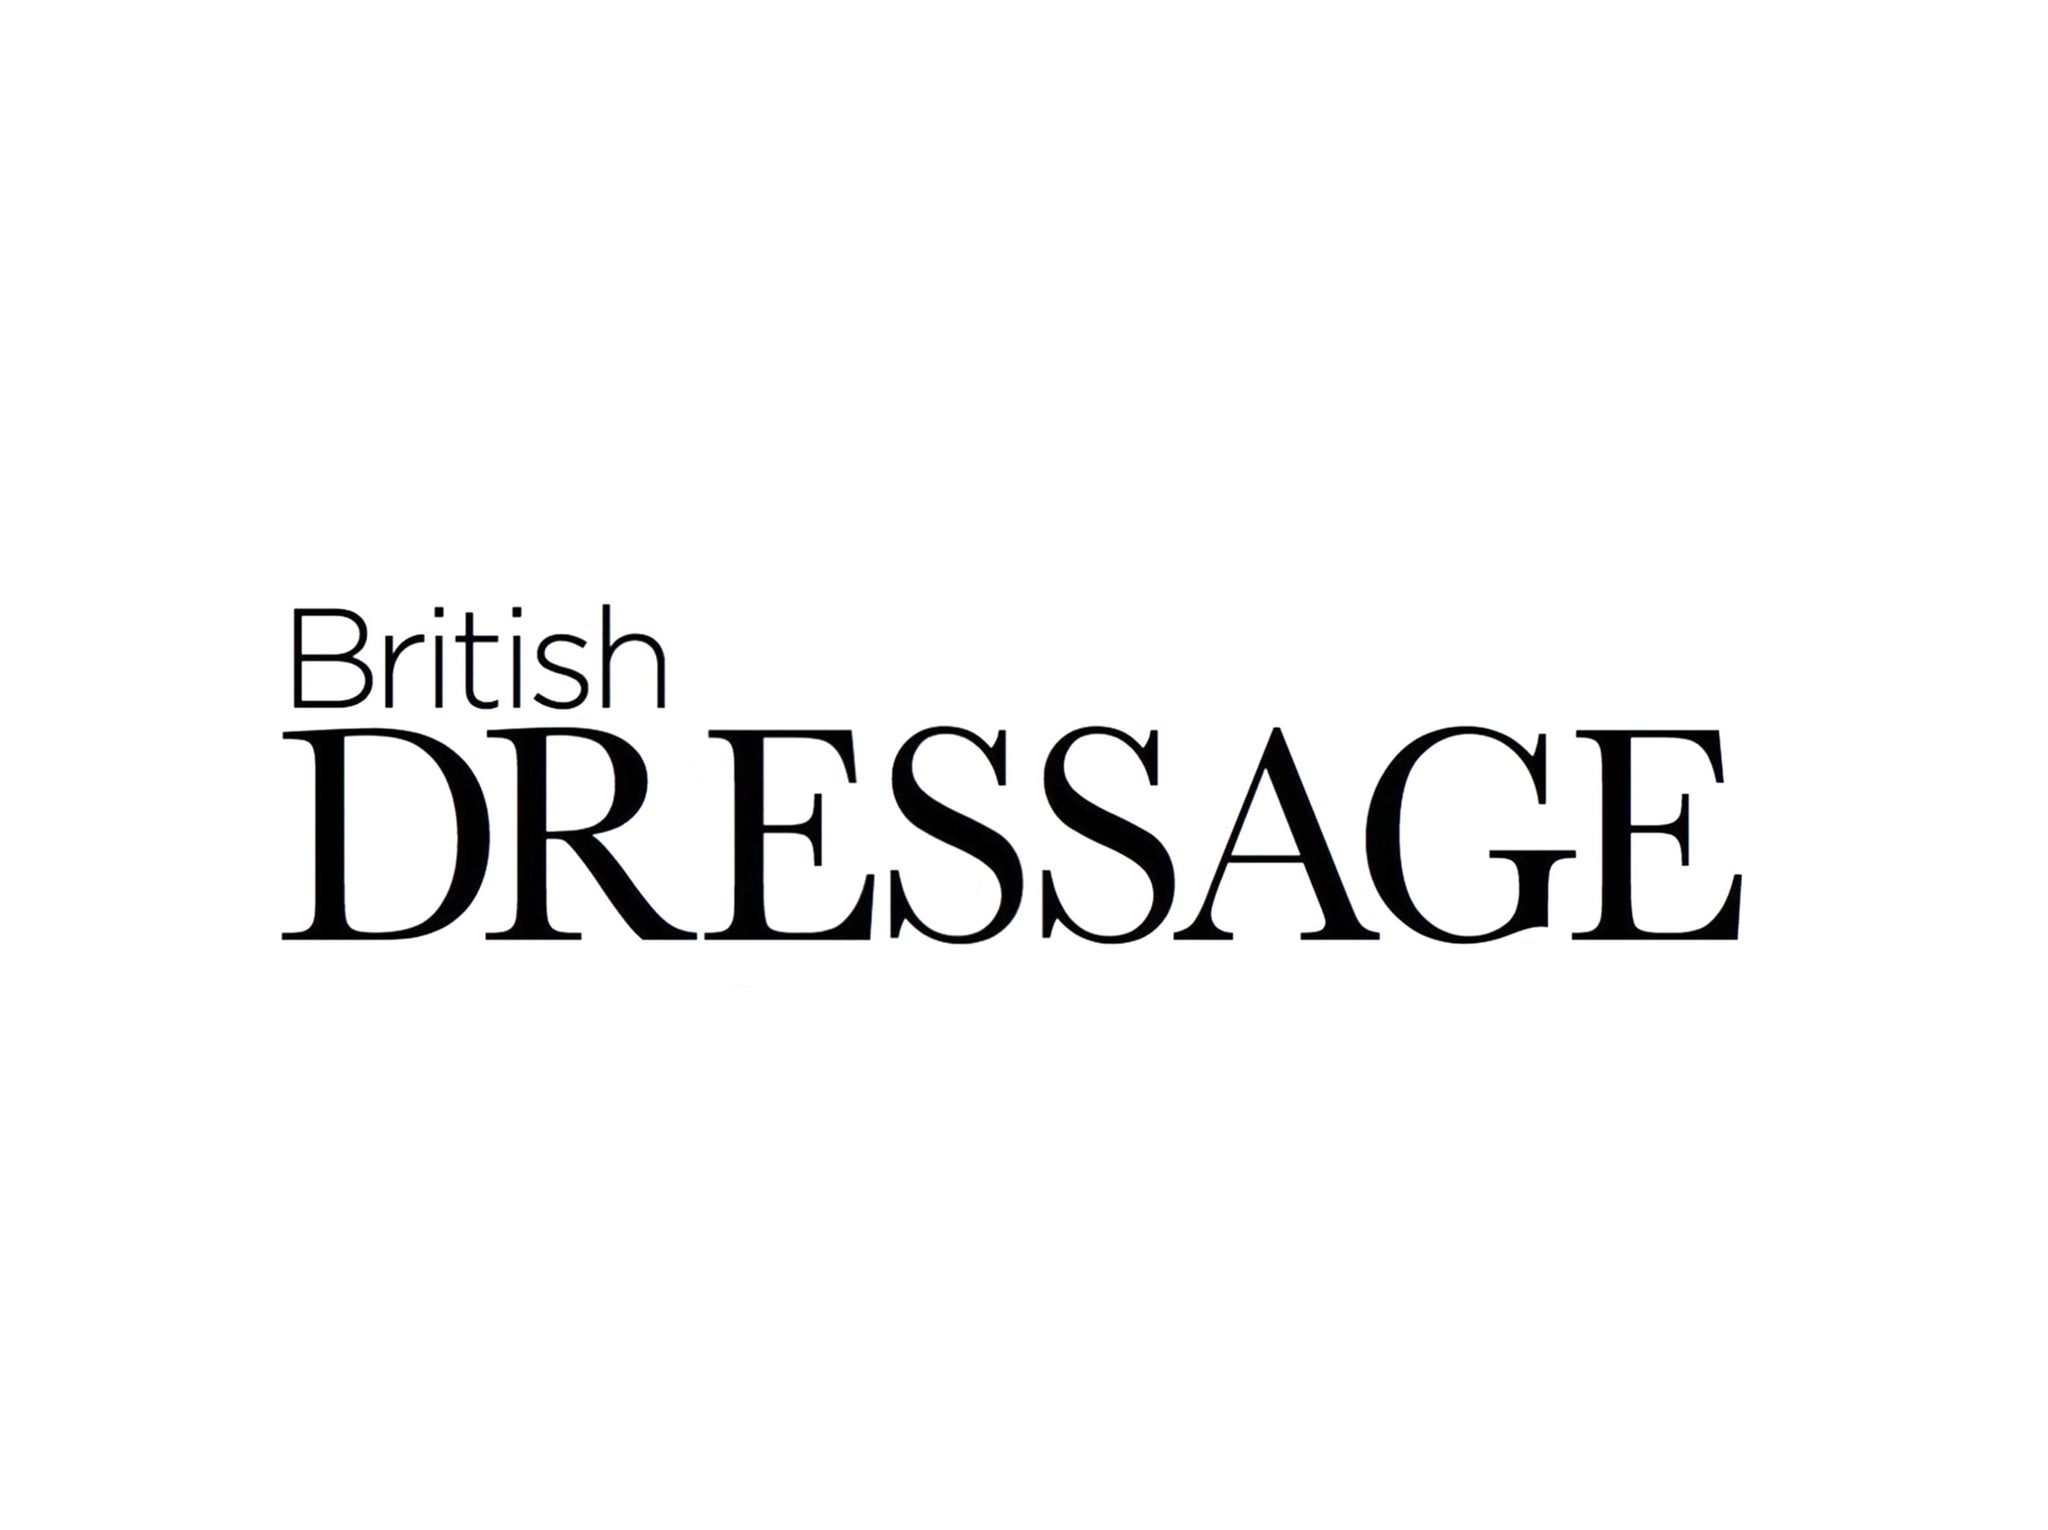 HC in British Dressage